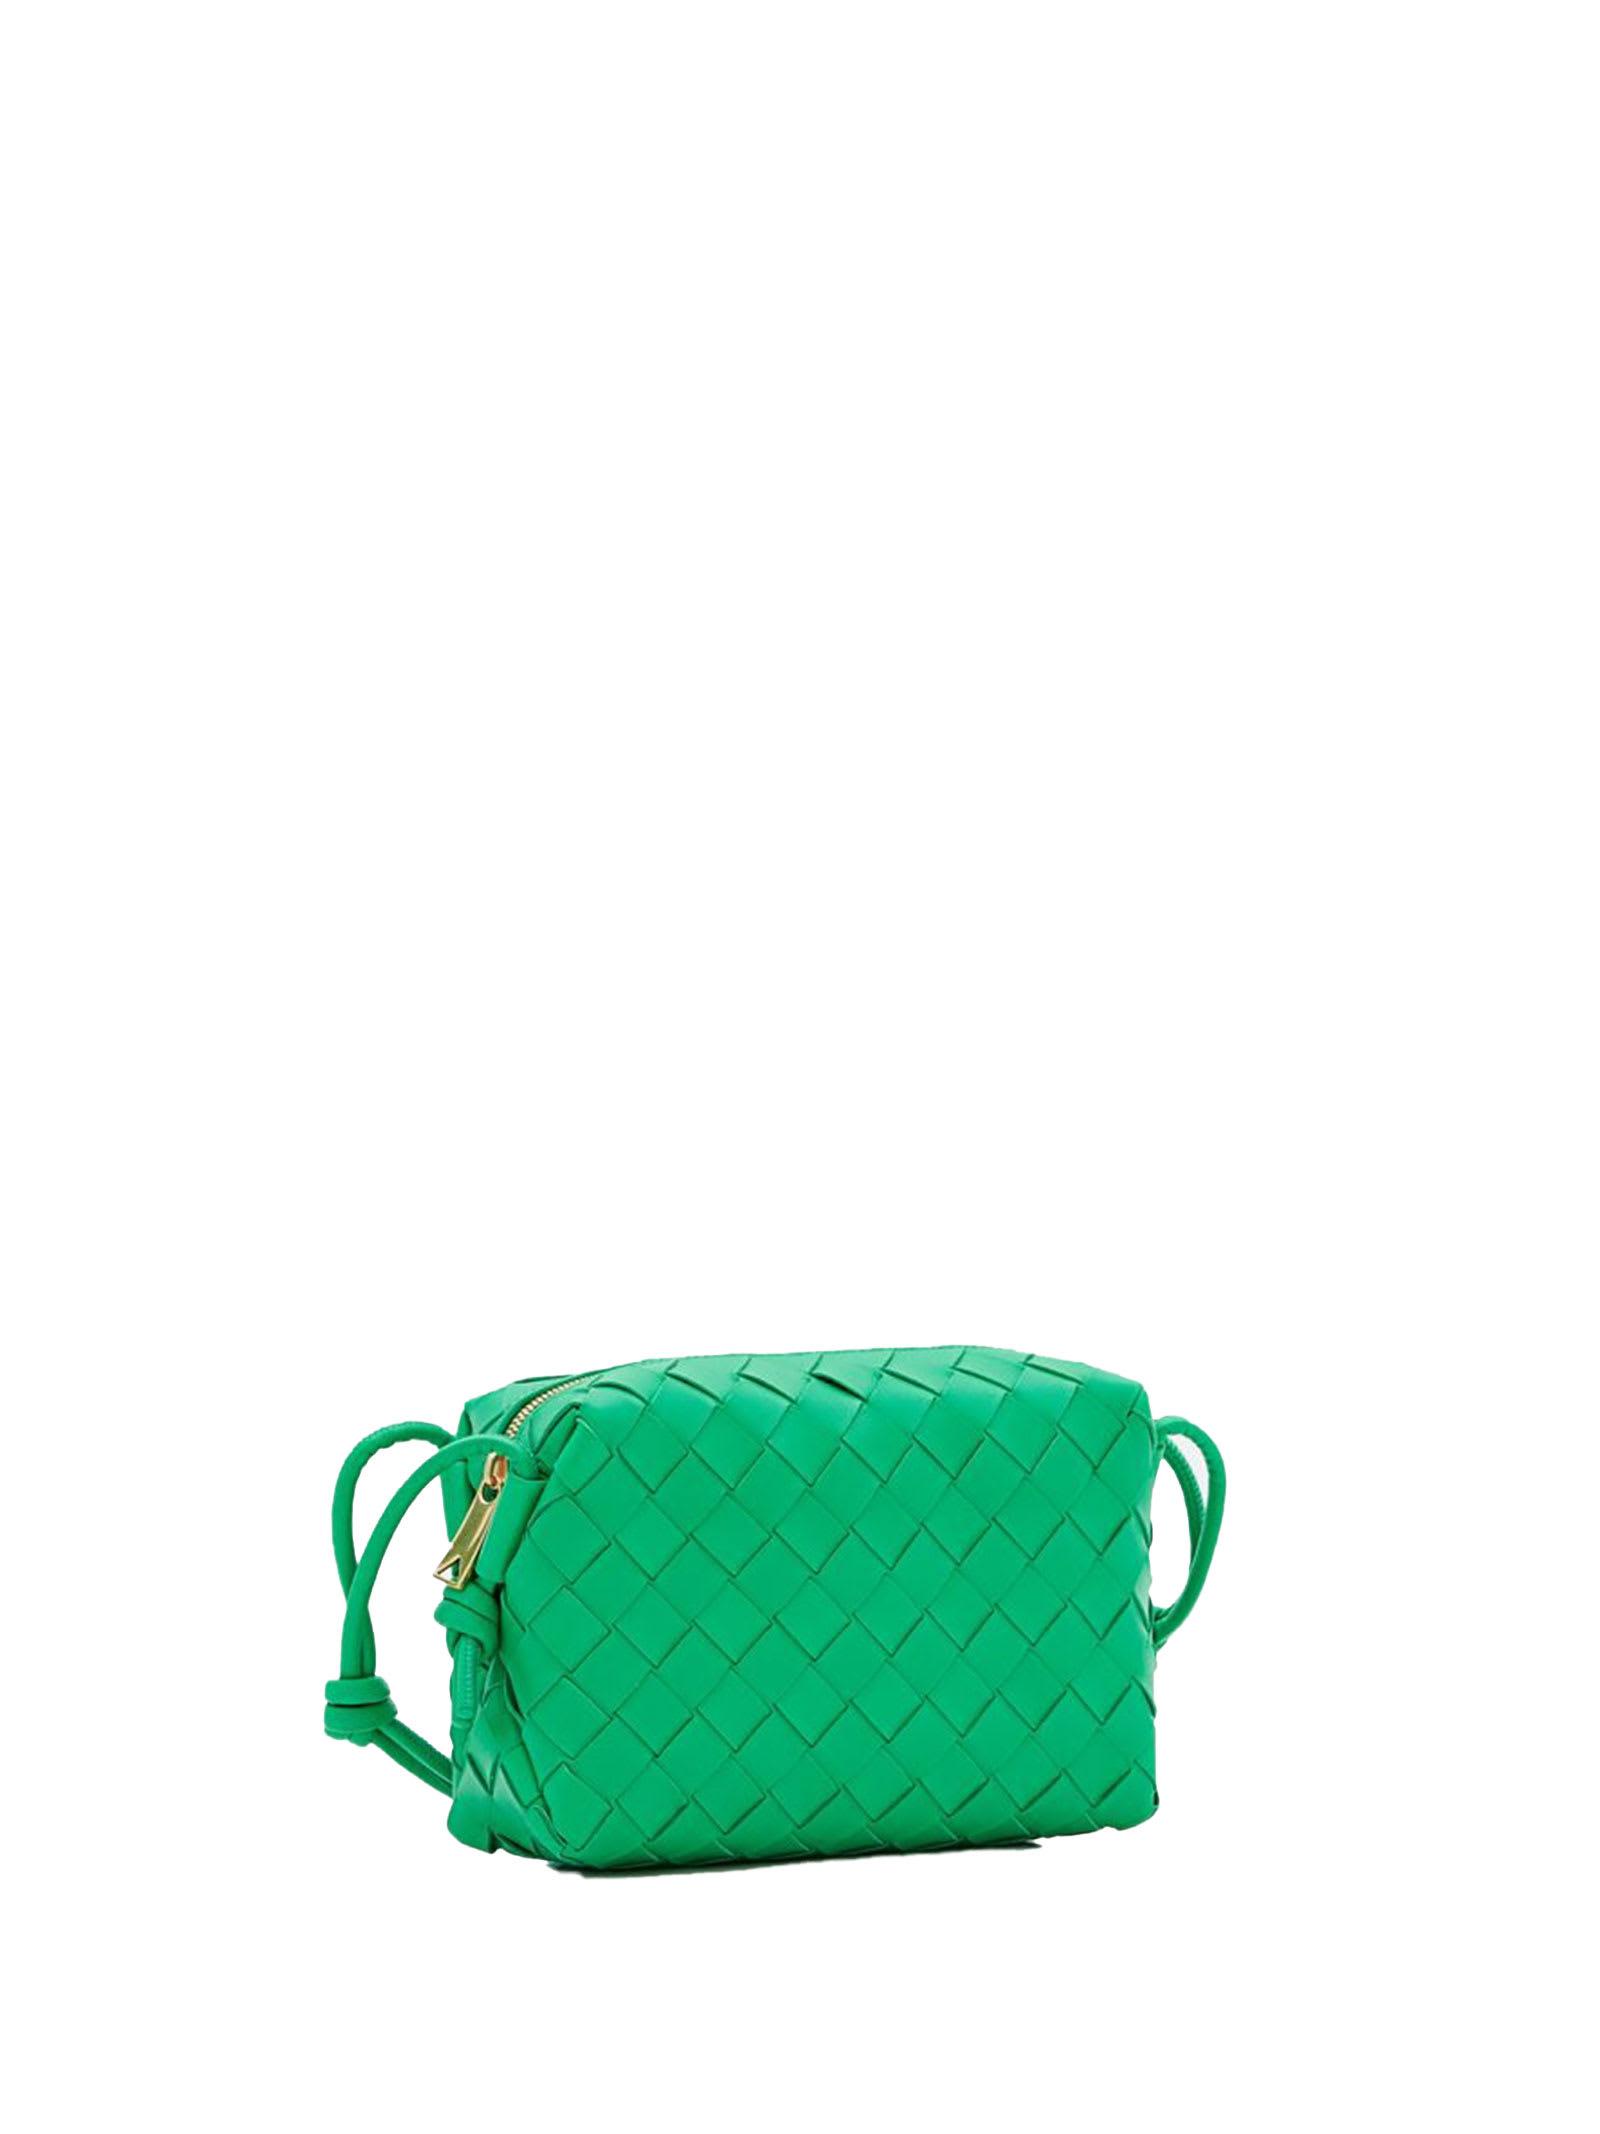 Bottega Veneta Leather Mini Loop Camera Bag in Green